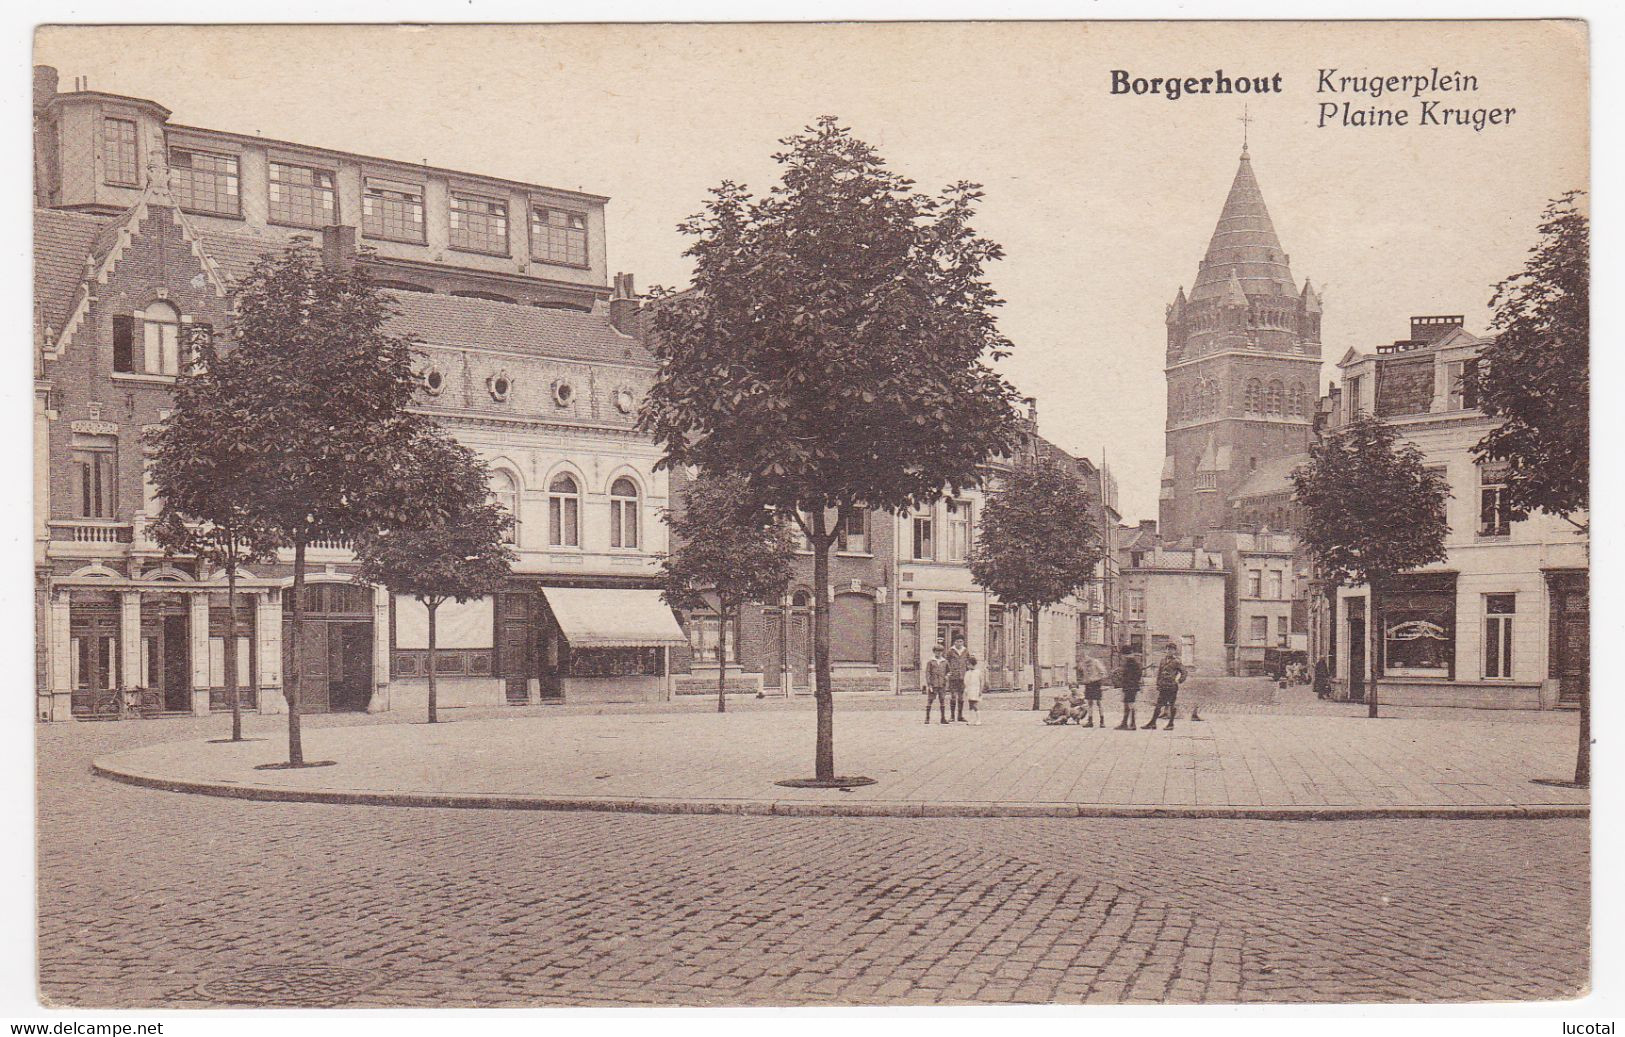 Borgerhout - Krugerplein - Uitg. Anpofa, Antwerpen - Hemiksem